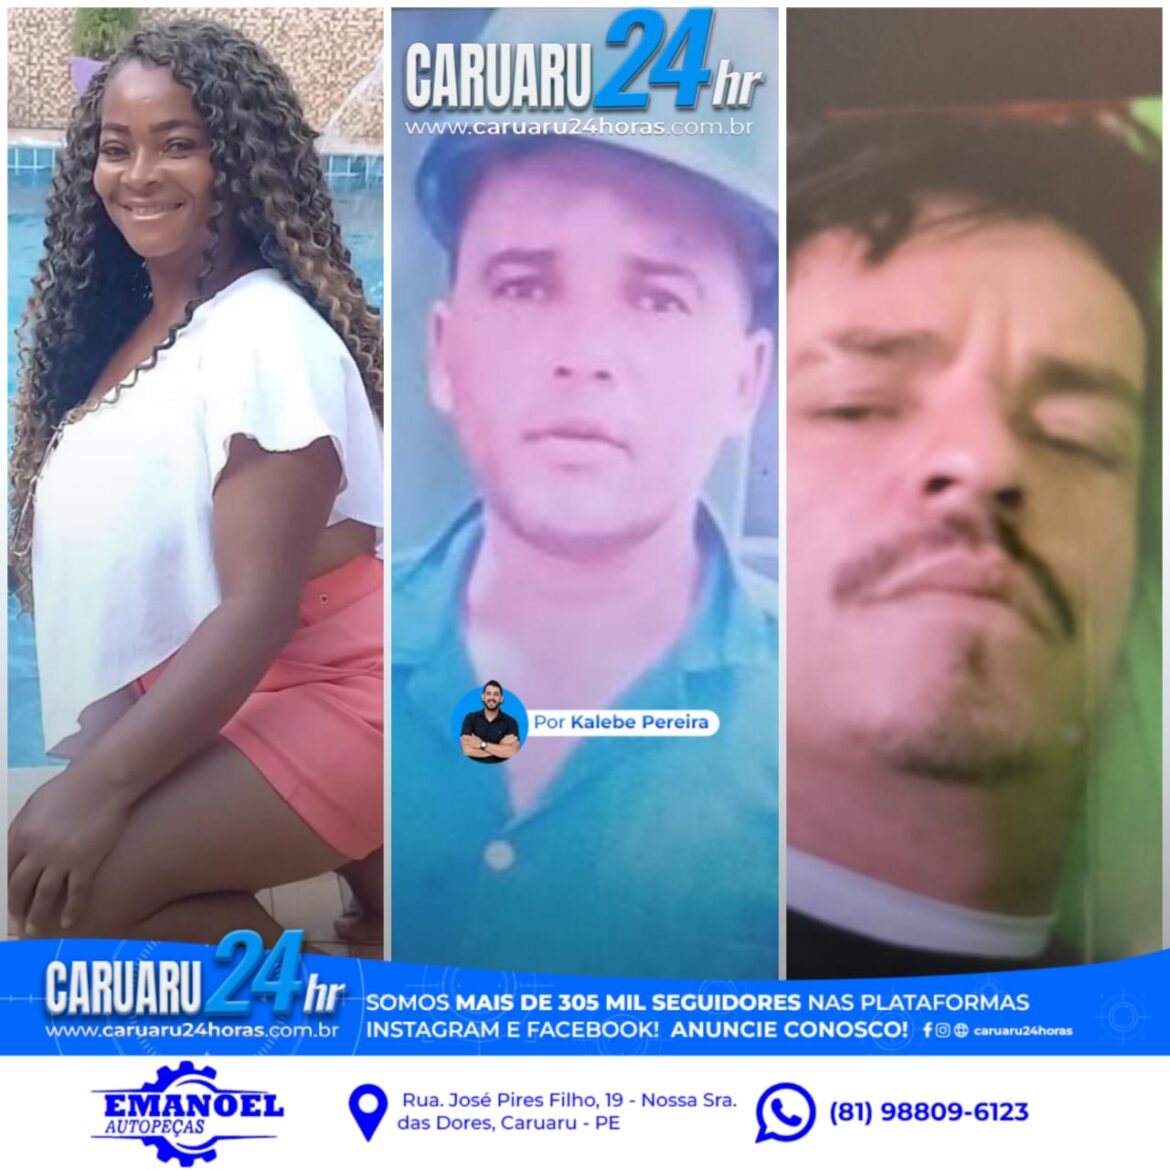 Três pessoas foram assassinadas e uma tentativa de homicídio foi registrada  nesta quarta-feira (24), em Caruaru.